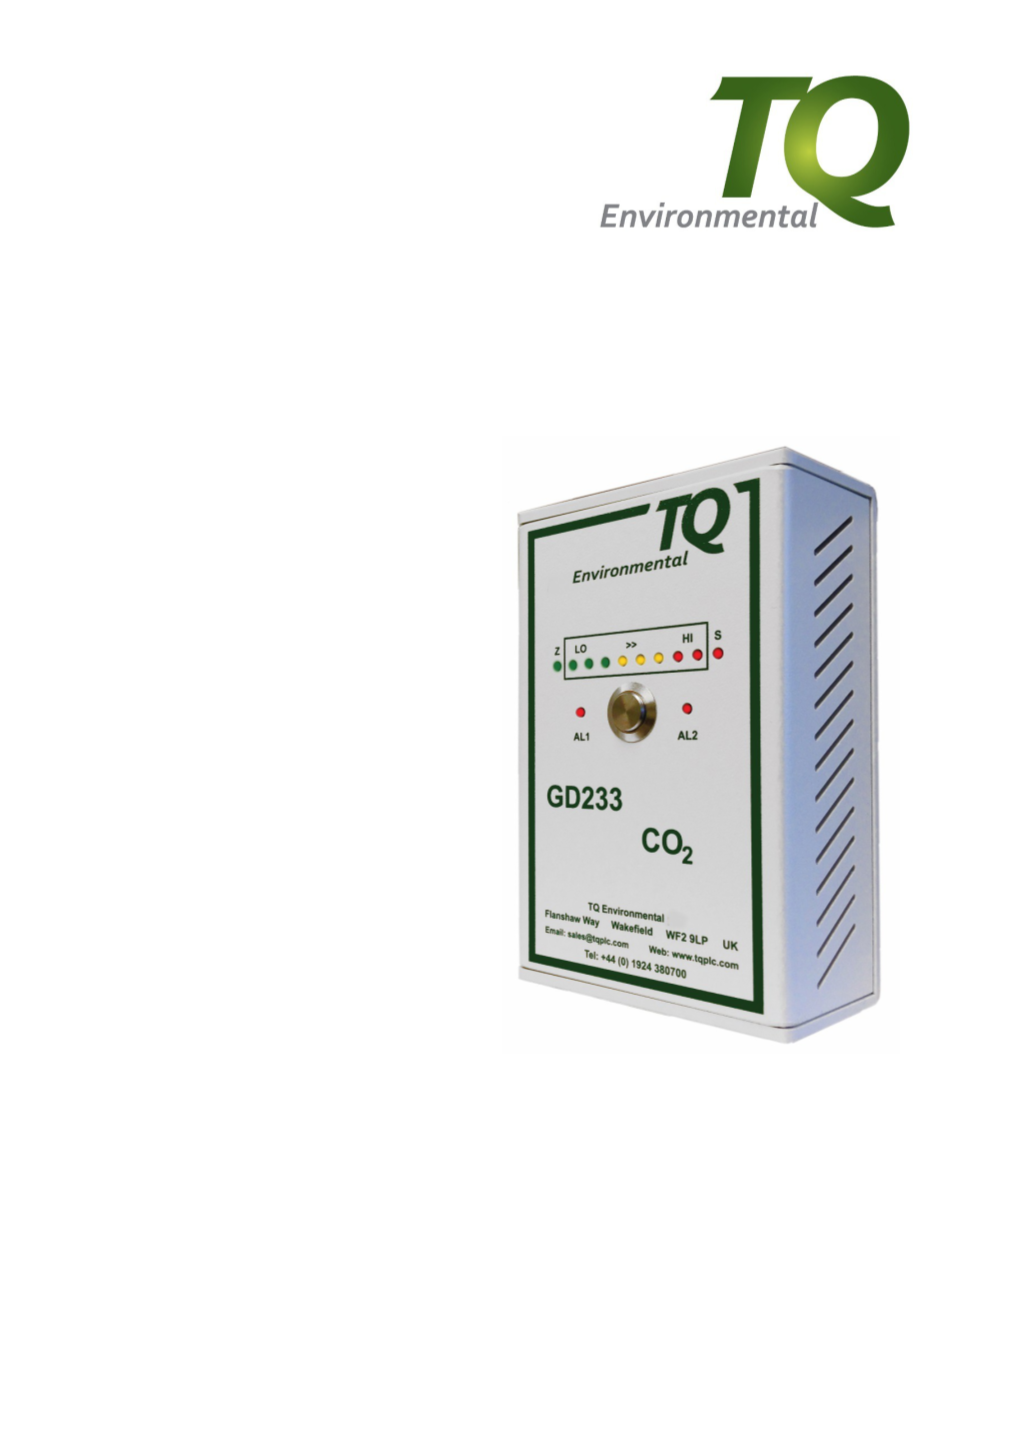 TQ Environmental Limited